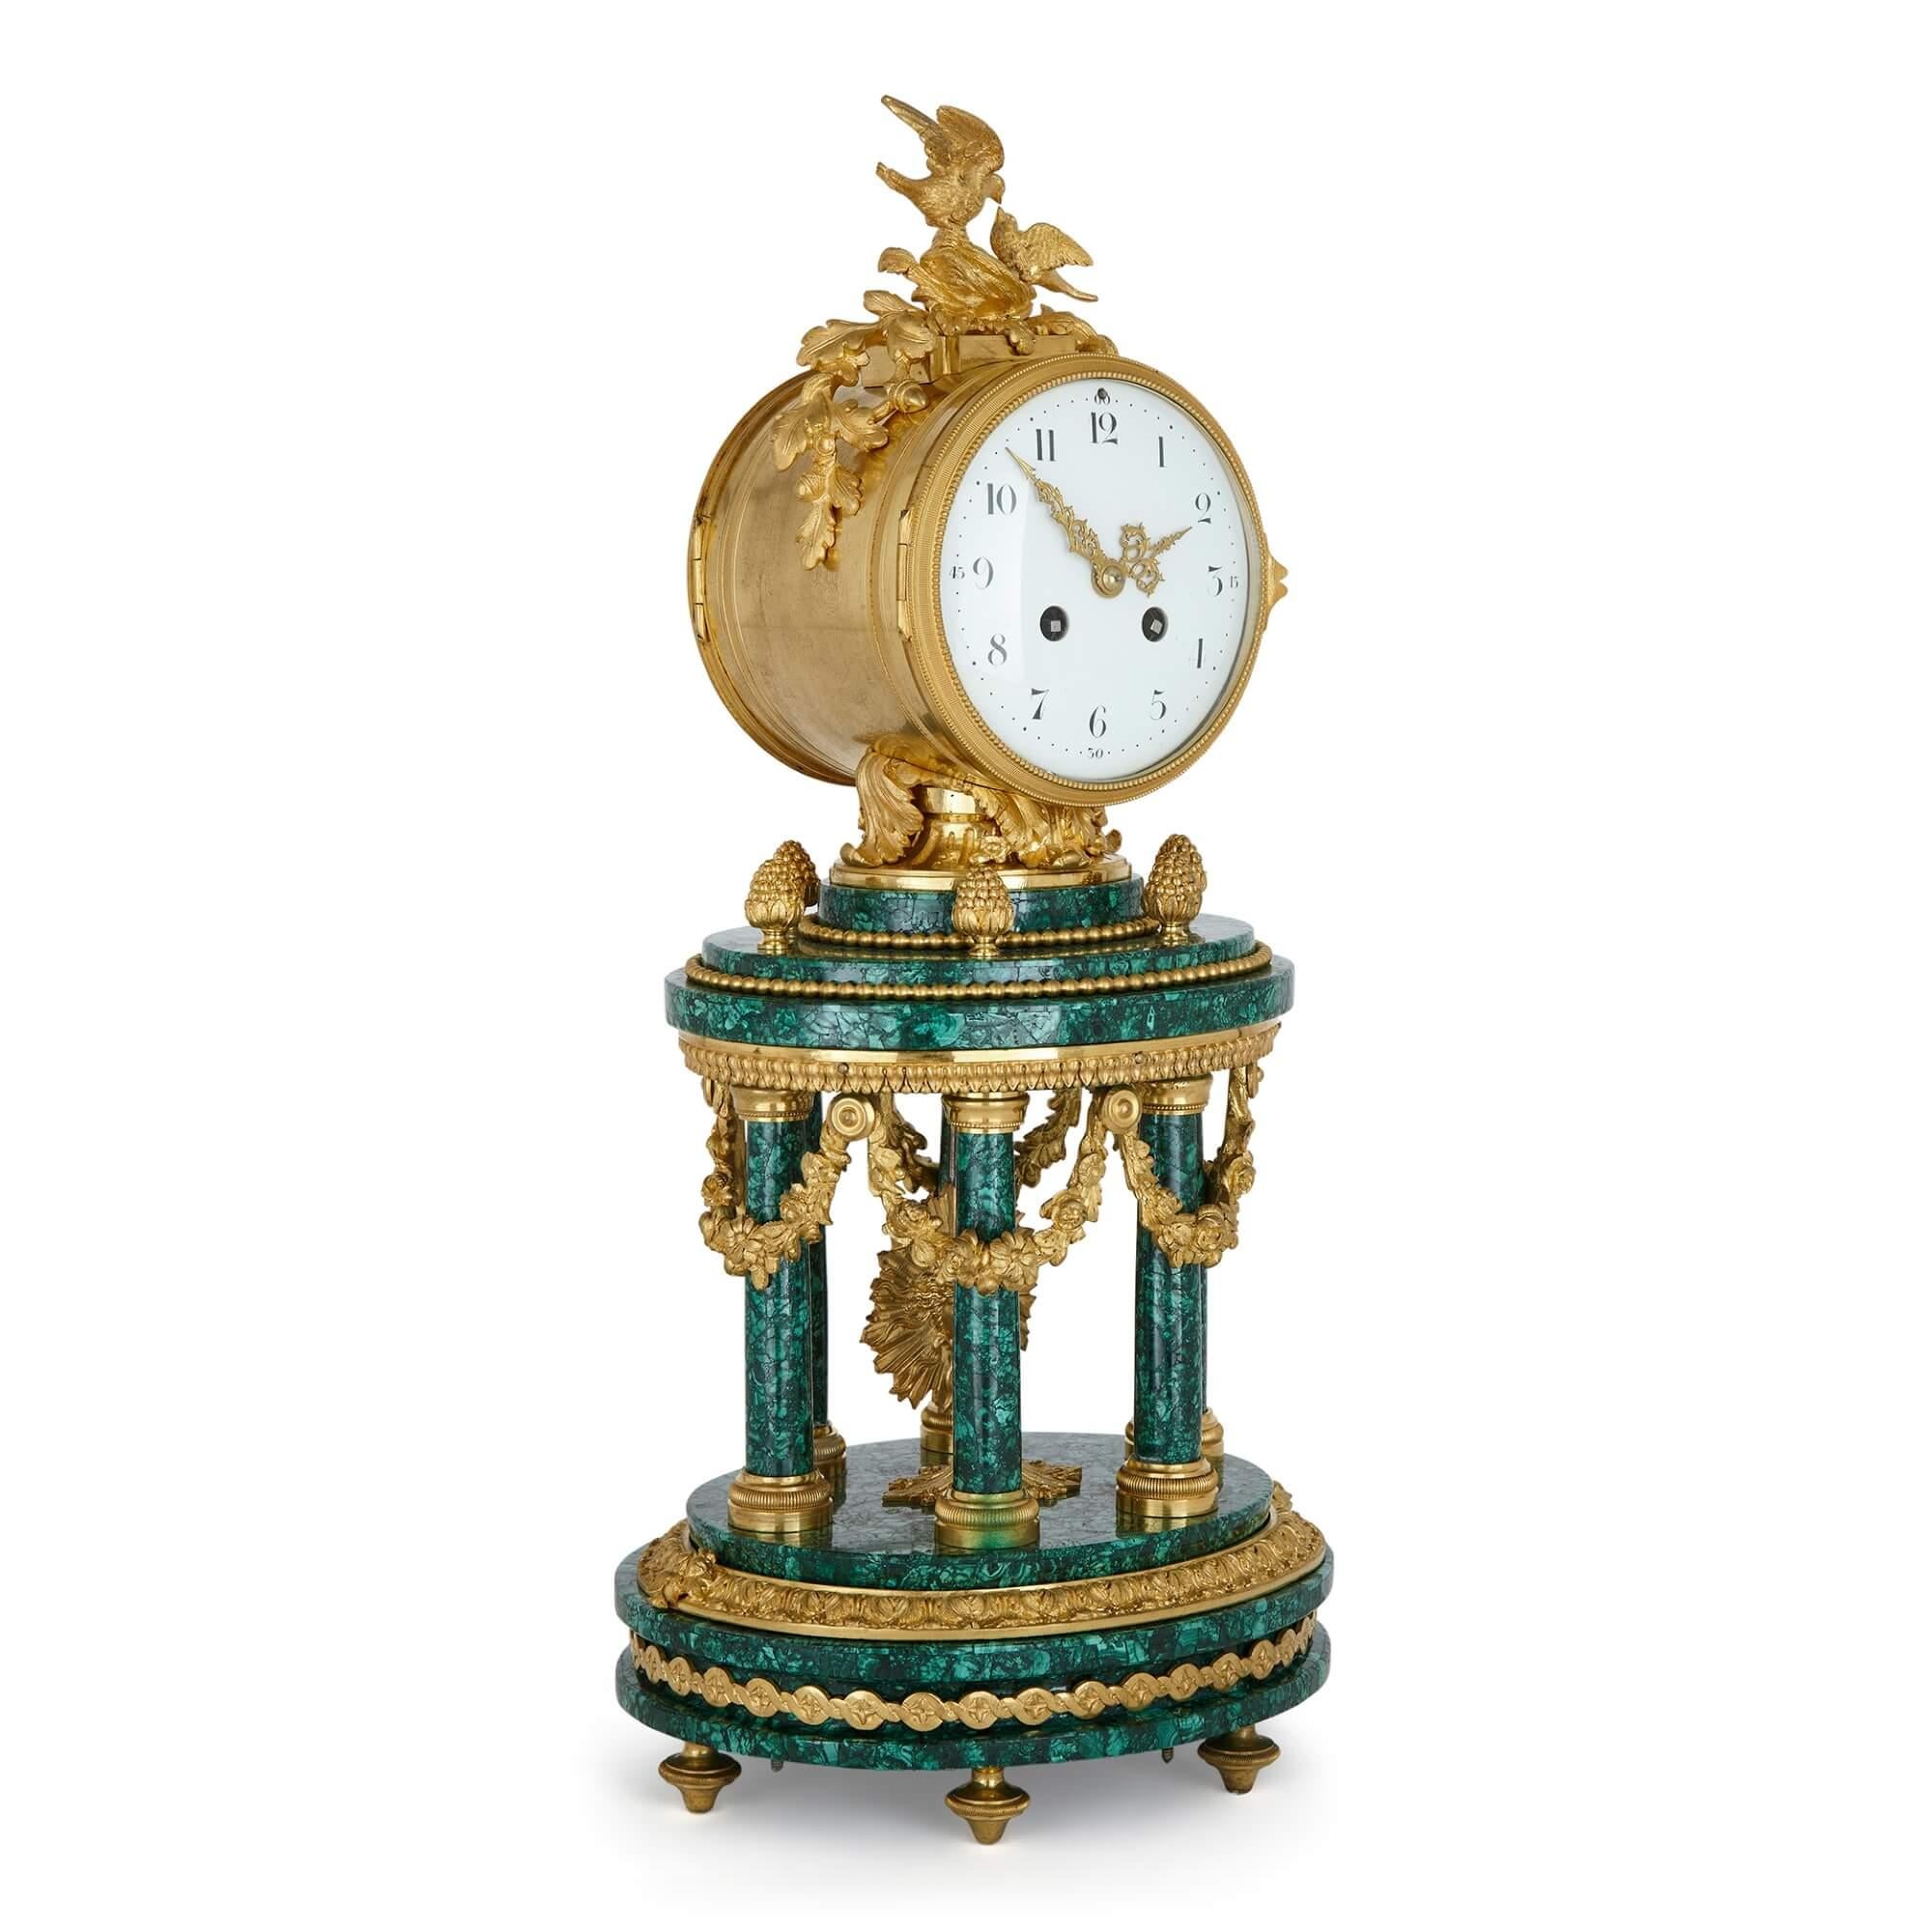 Louis XVI-Stil Ormolu montiert Malachit Spalte Mantel Uhr.
Französisch, Ende 19. Jahrhundert.
Maße: Höhe 52cm, Breite 23cm, Tiefe 20cm.

Das runde Zifferblatt ist in ein rundes Trommelgehäuse eingelassen. Diese schöne, auf Malachitsäulen